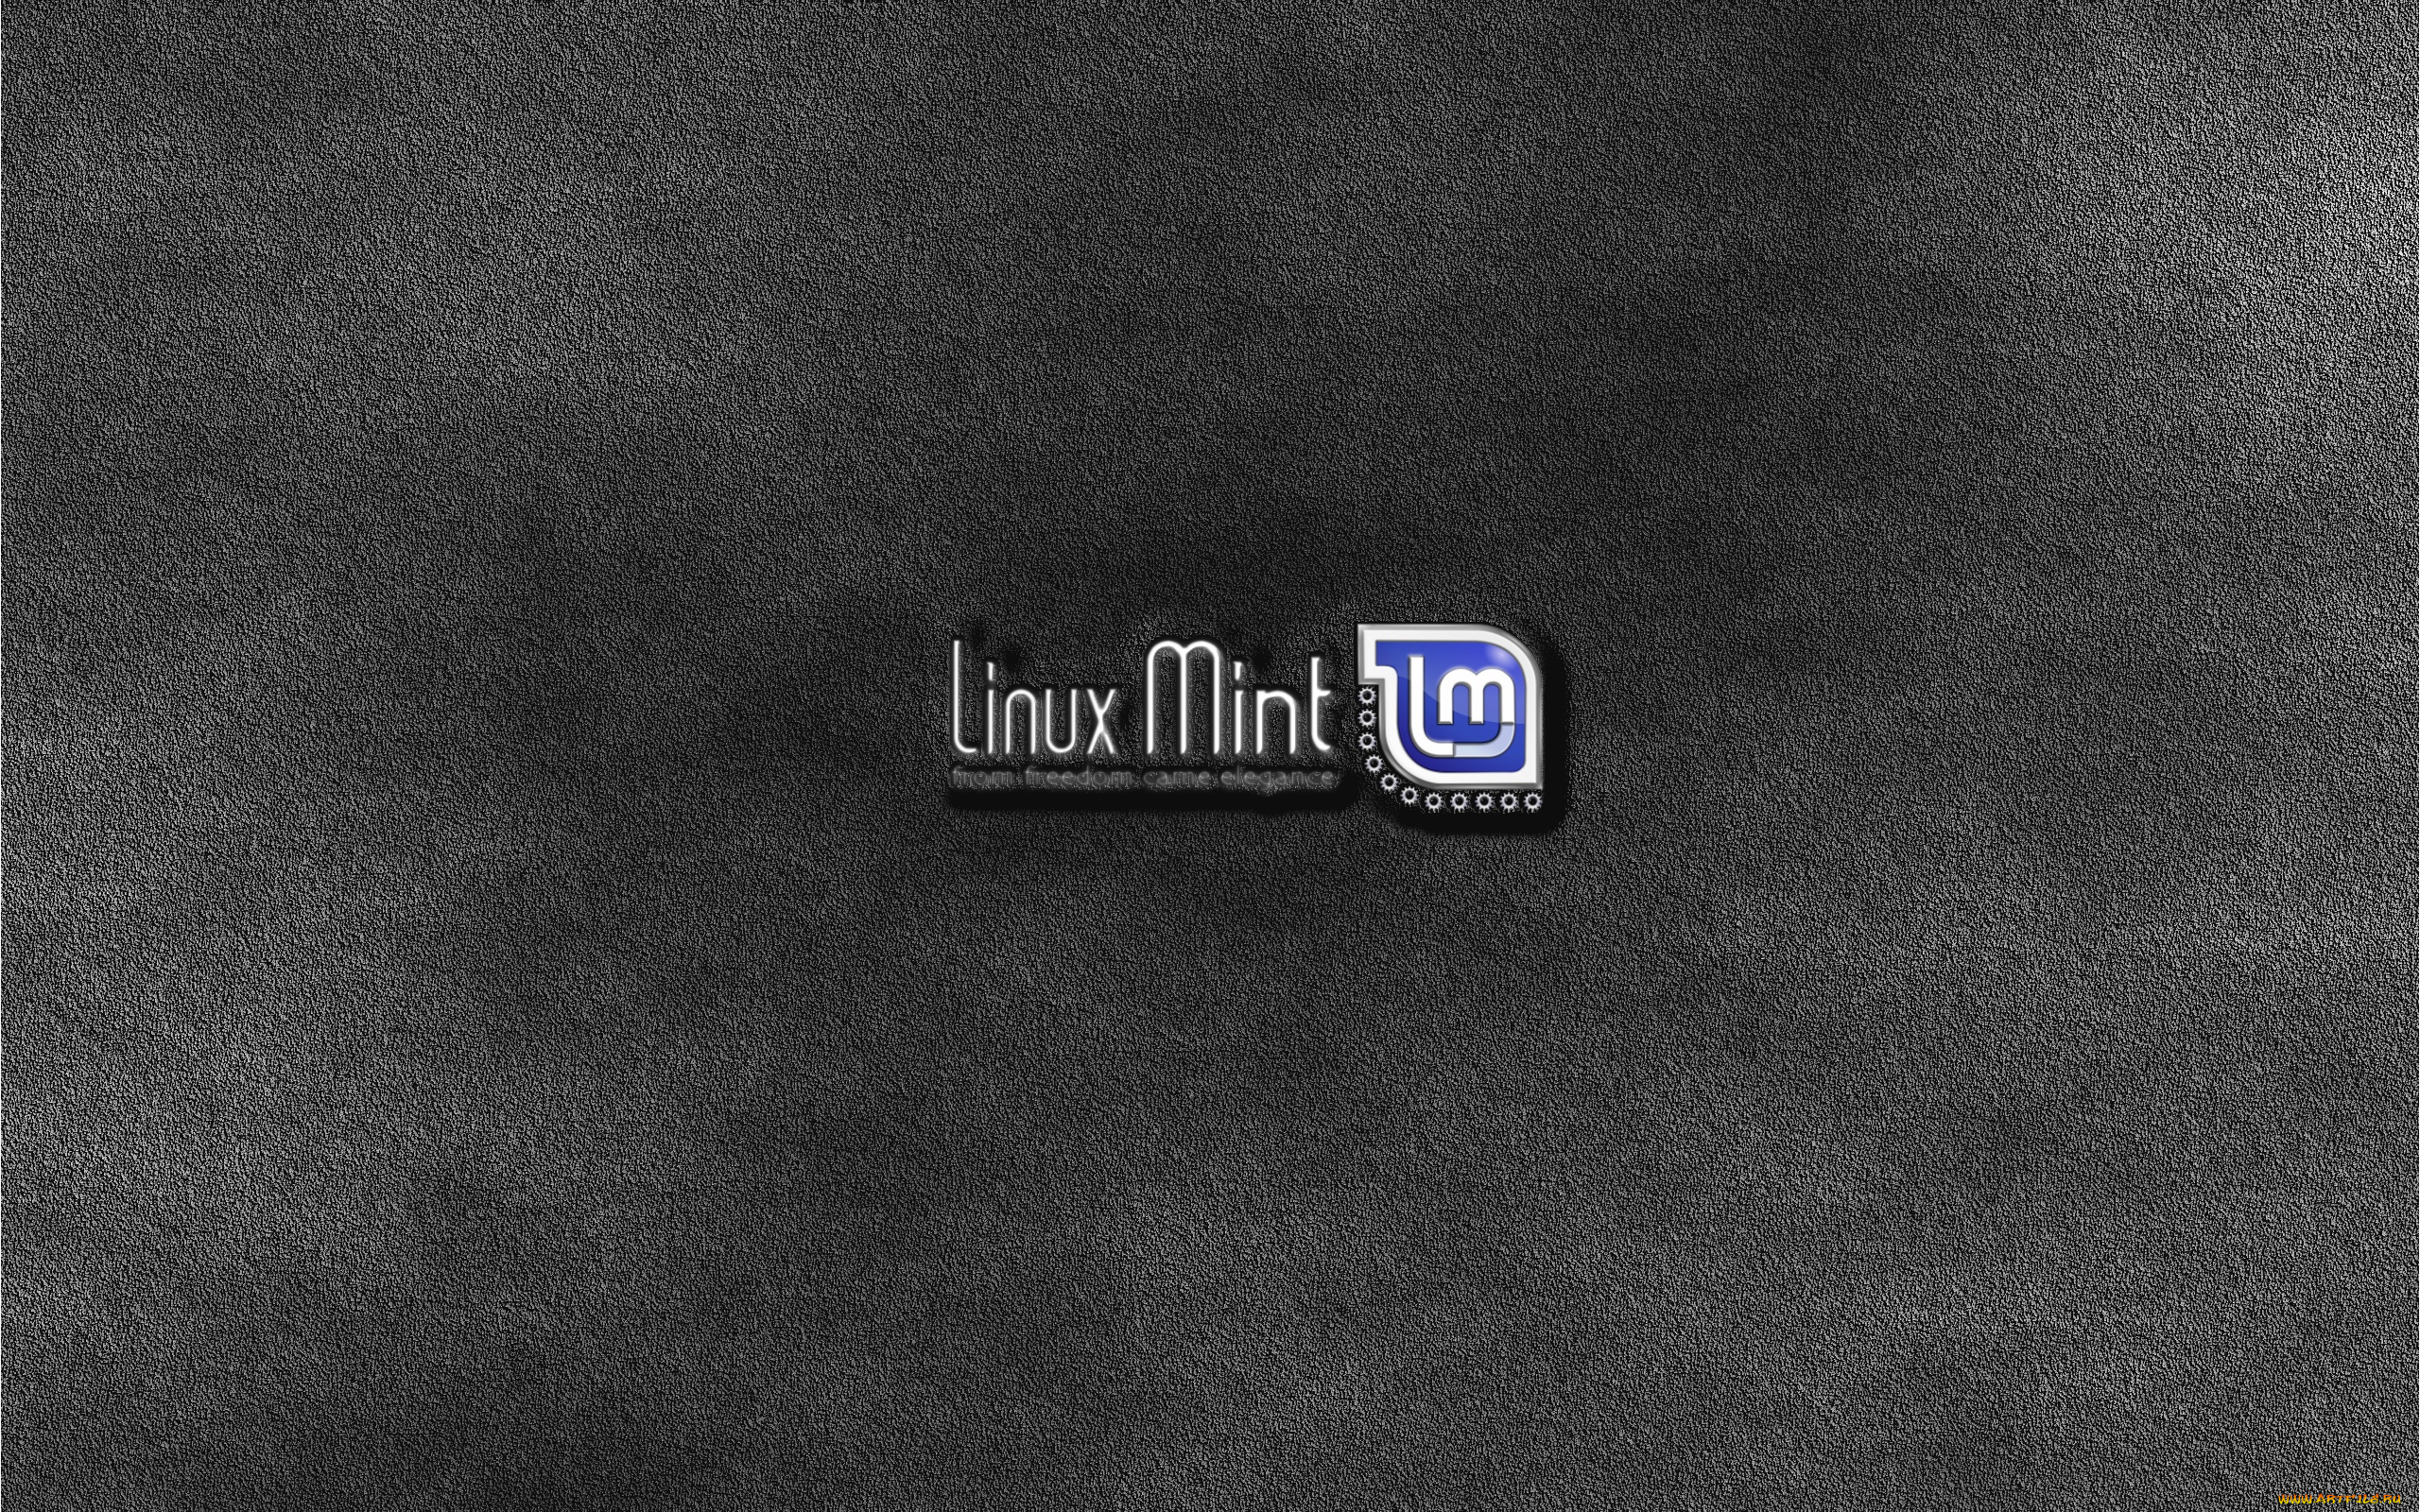 компьютеры, linux, фон, логотип